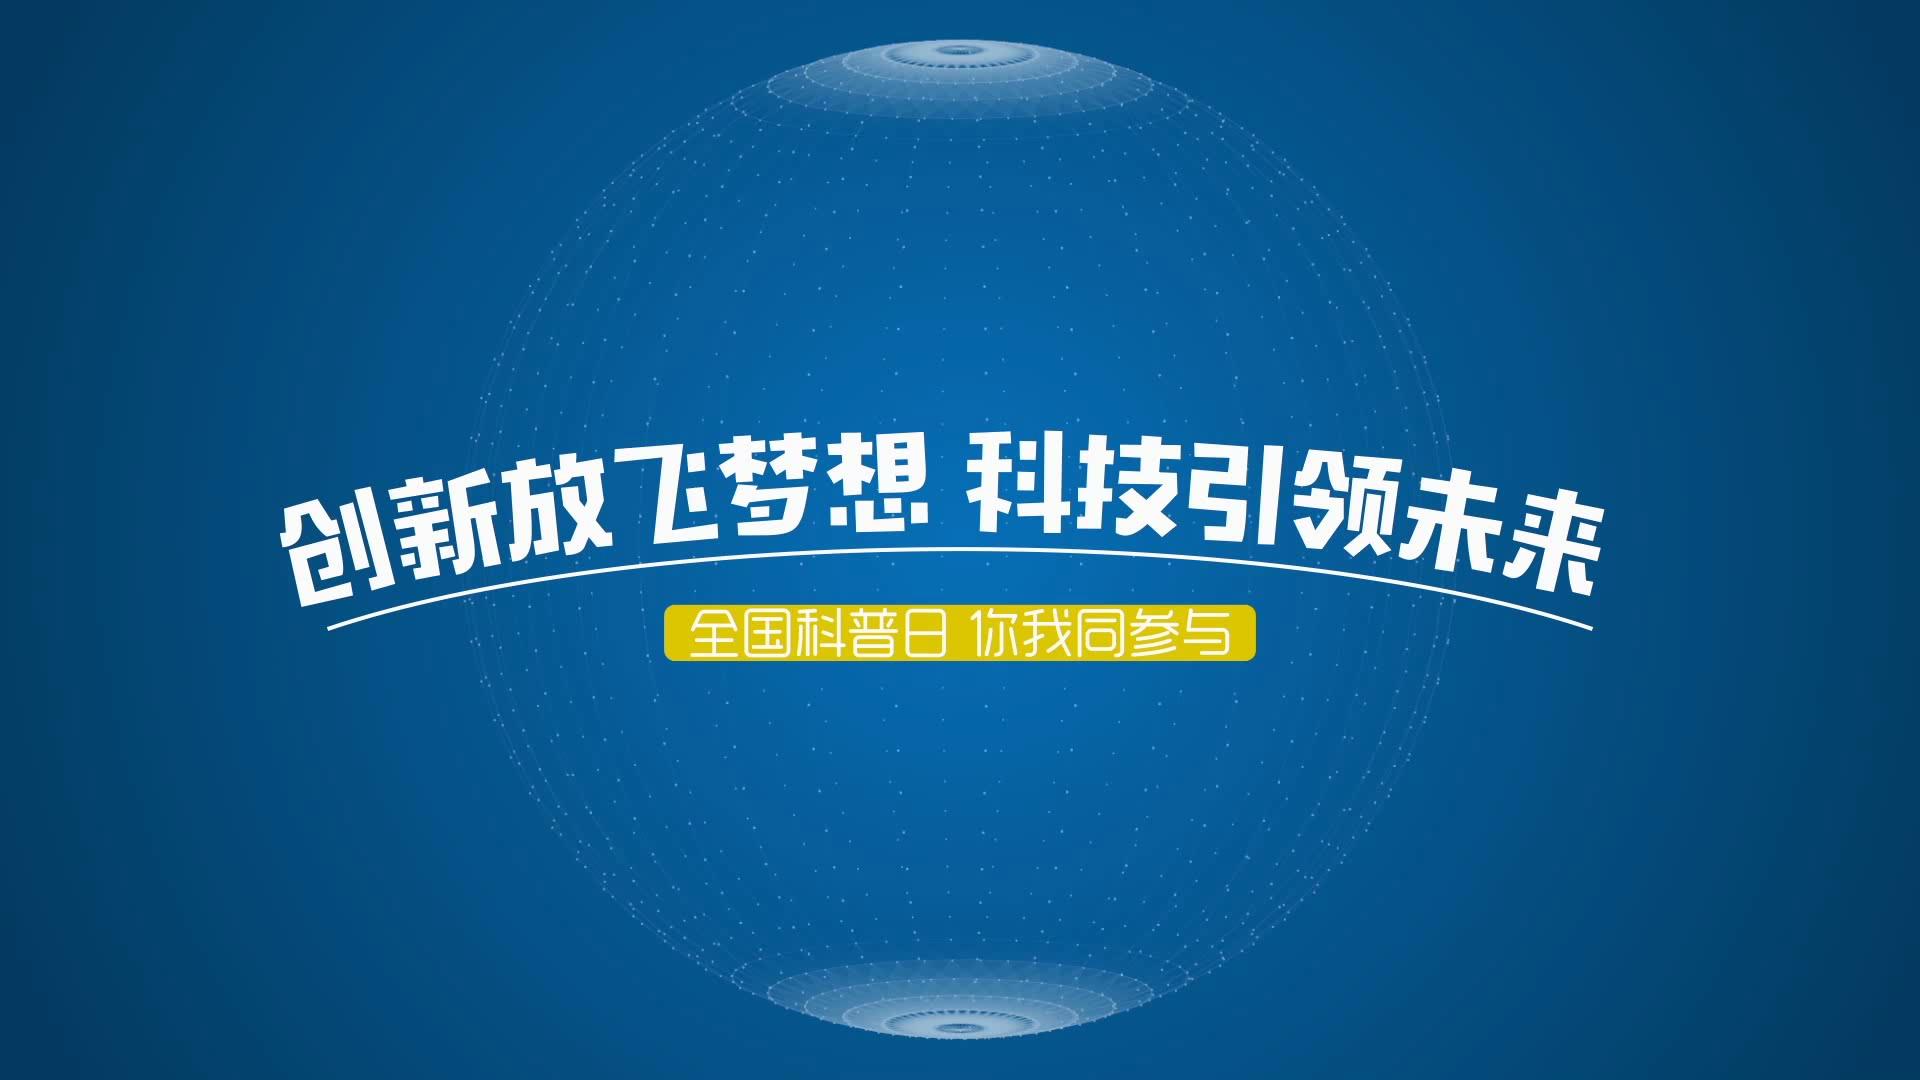 北京闪联传媒技术有限公司_团队风采_移动融合创作